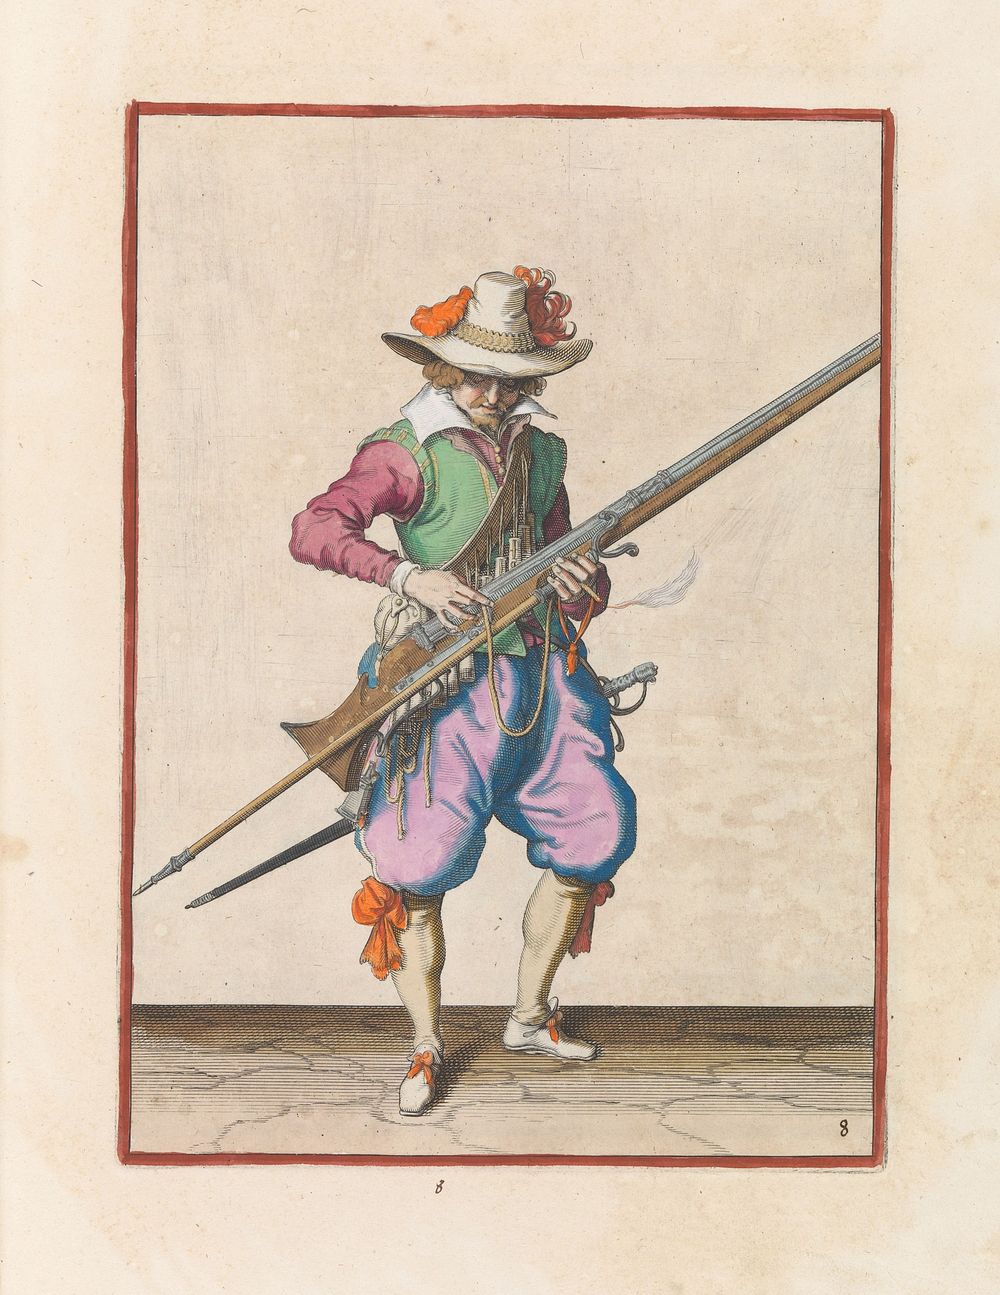 Soldaat die zijn lont op de haan van zijn musket drukt (c. 1597 - 1607) by Jacques de Gheyn II and Jacques de Gheyn II